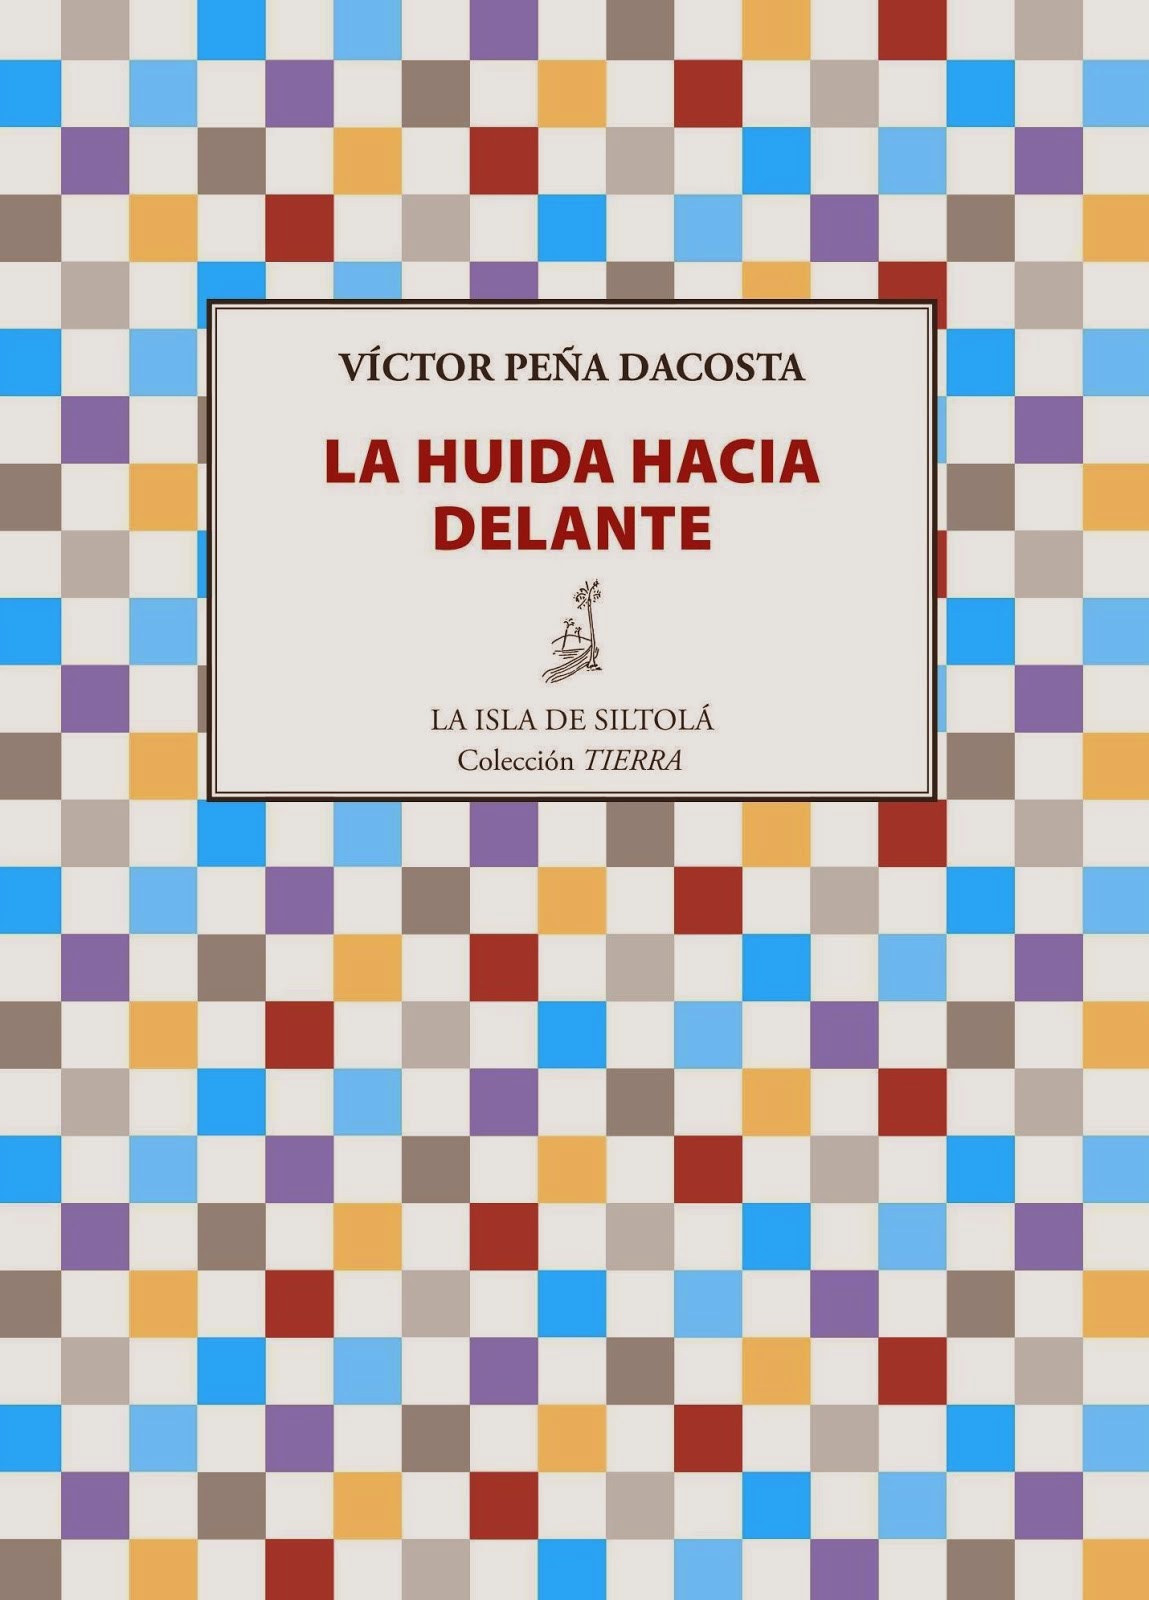 Víctor Peña Dacosta